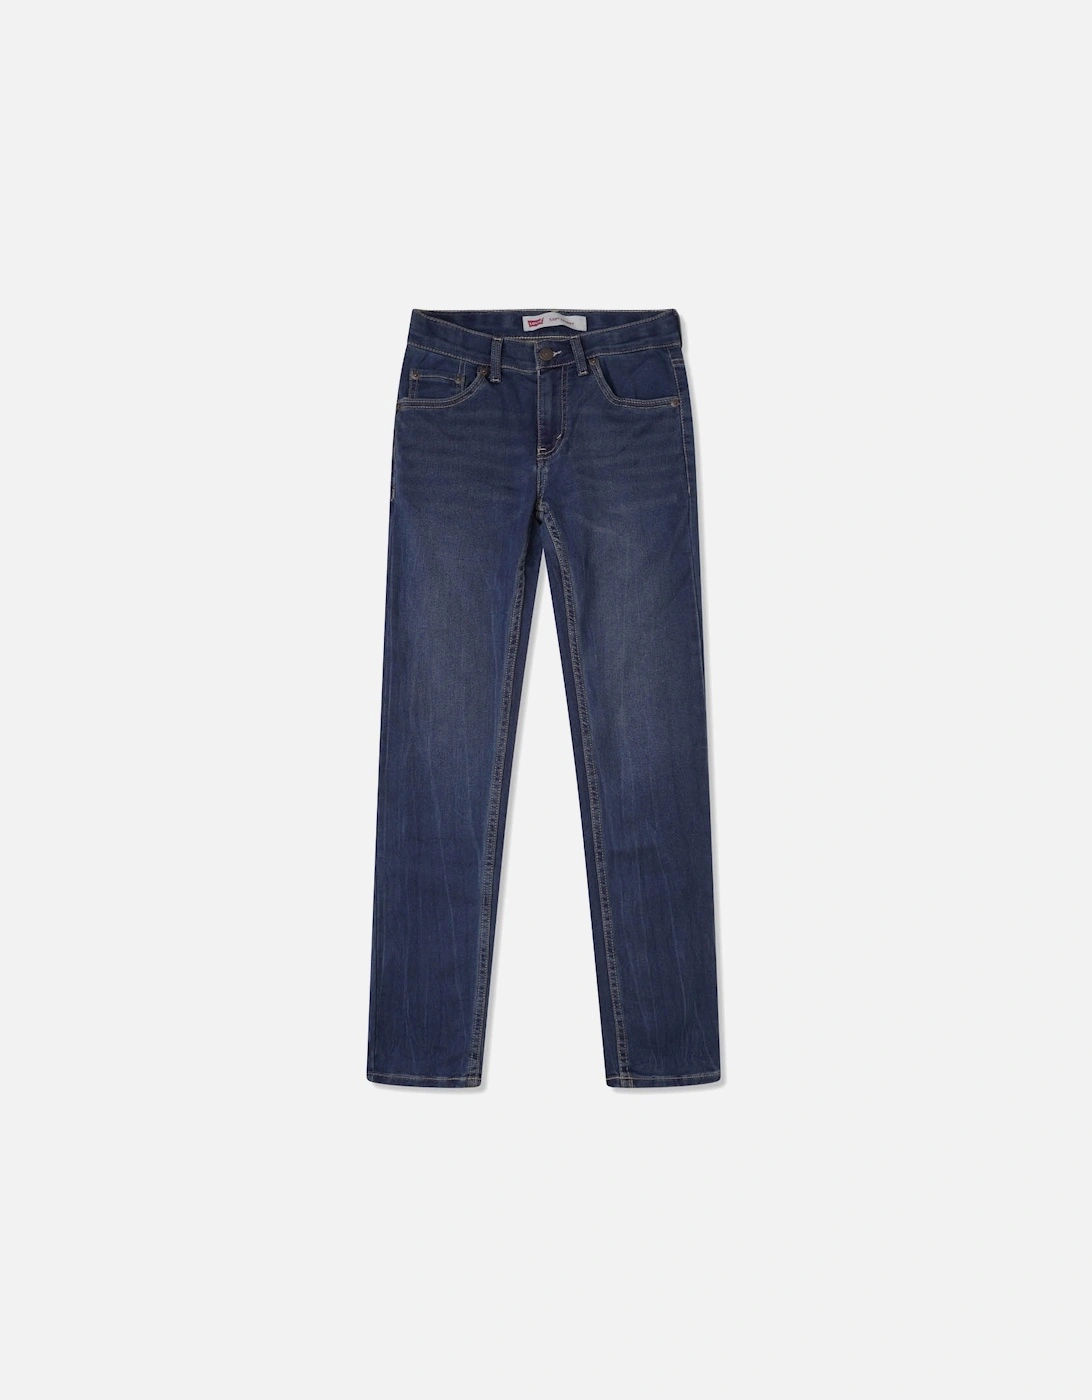 LEVIS Juniors 510 Knit Jeans (Blue), 3 of 2